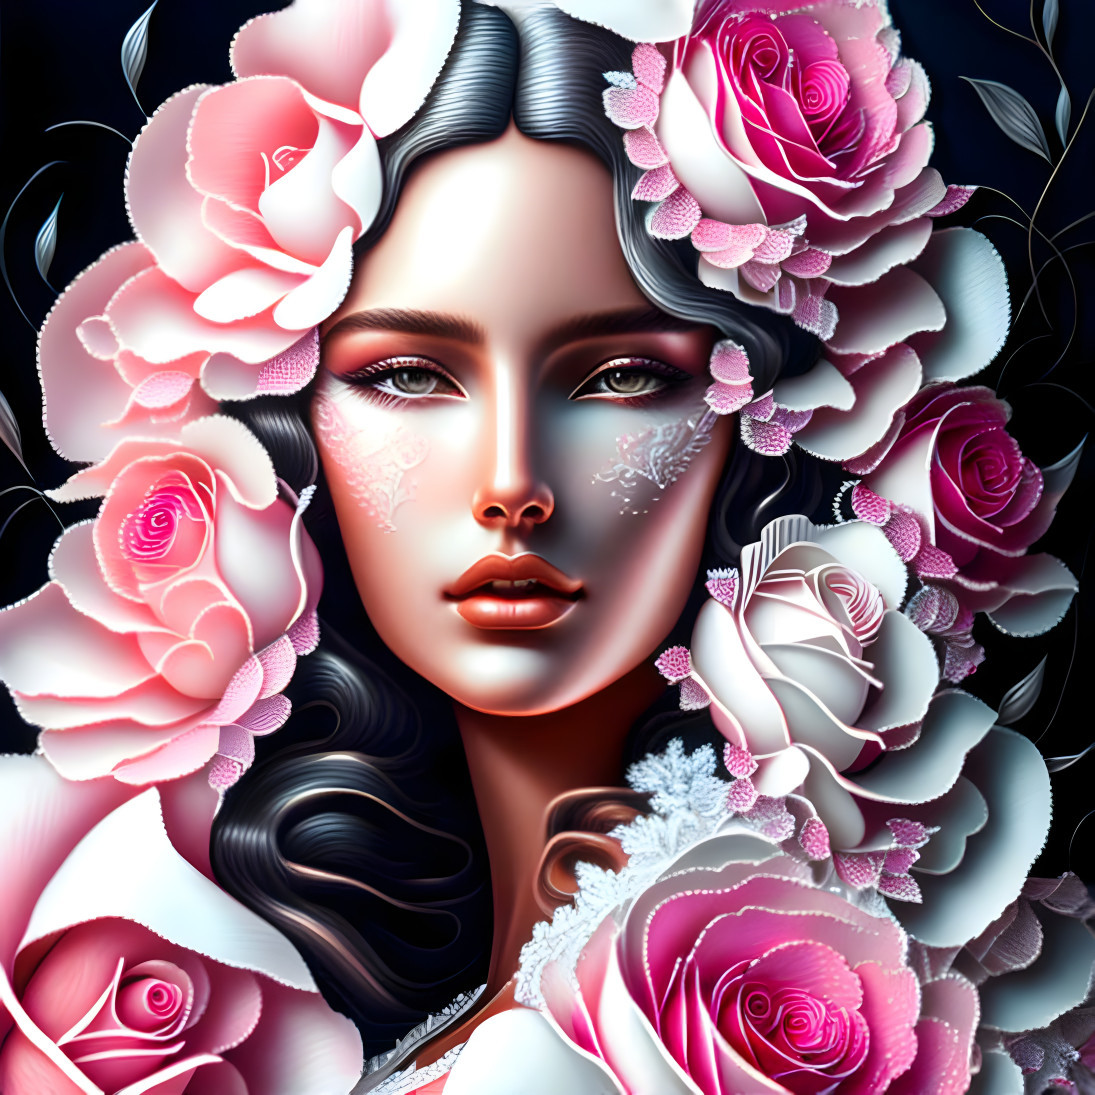 Queen of pink roses